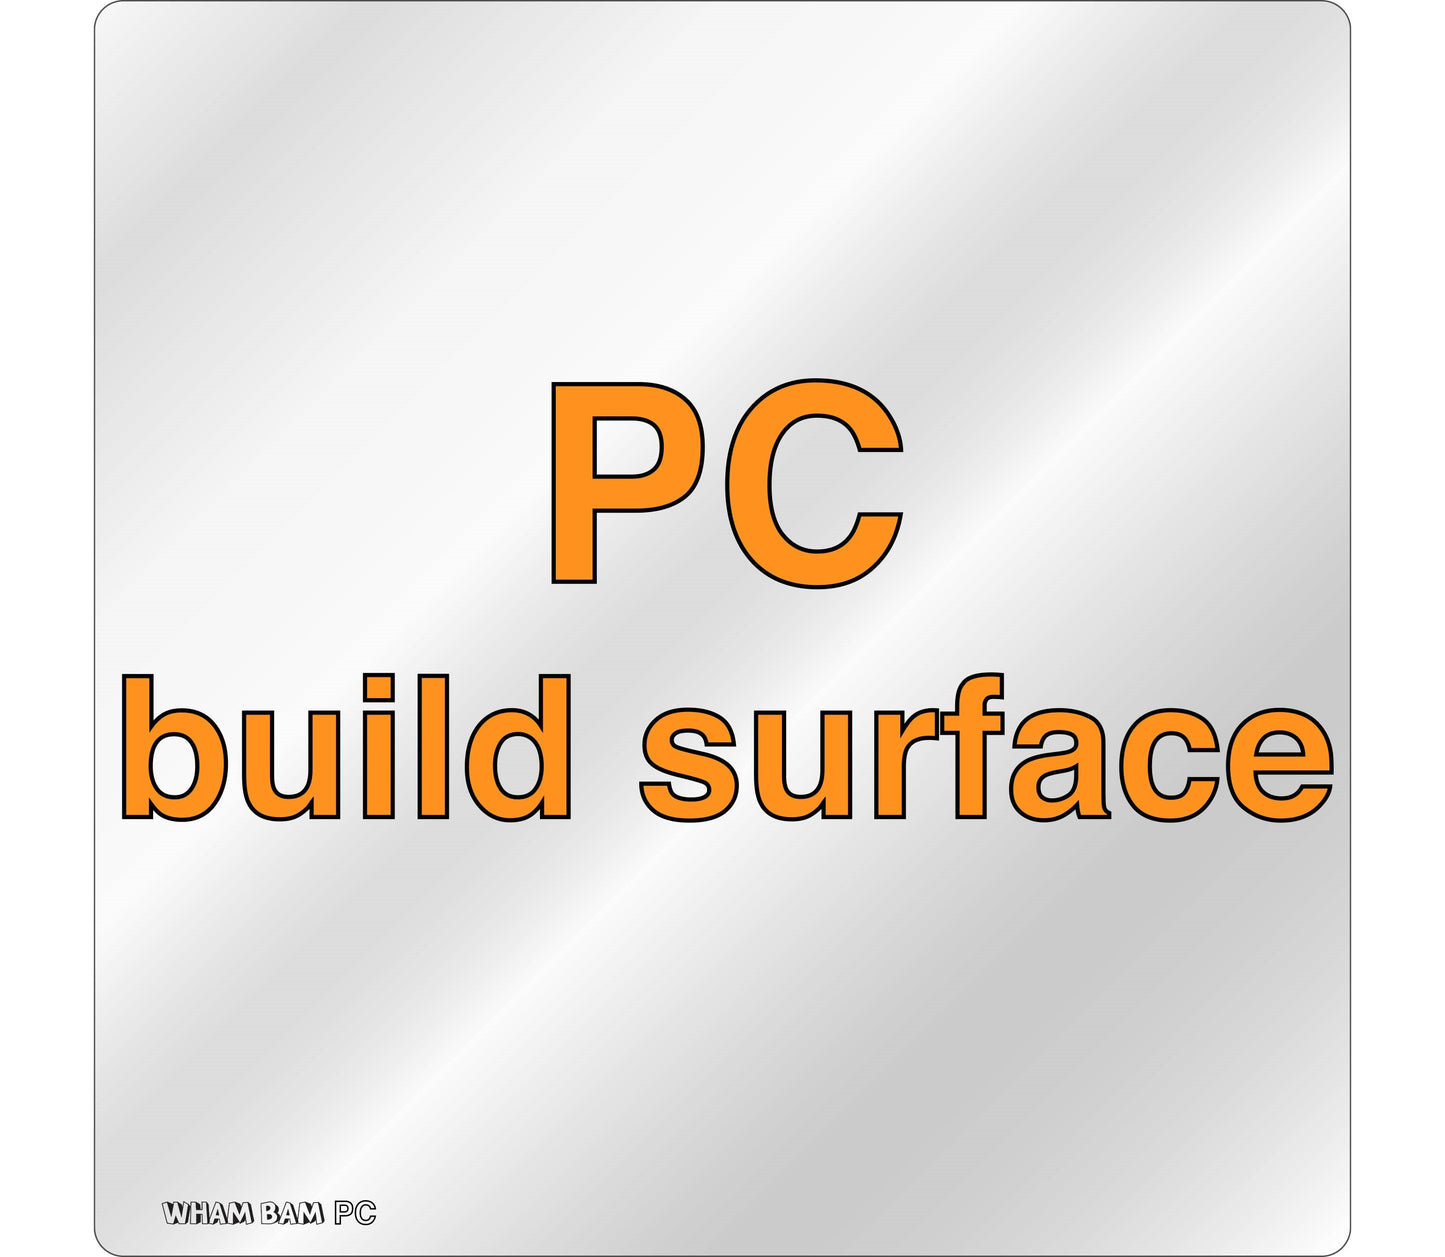 PC Build Surface (Clear) - 330 x 330 - Geeetech A30, Raise3d Pro2 & Pro2 Plus, TronXY X3S  X5S